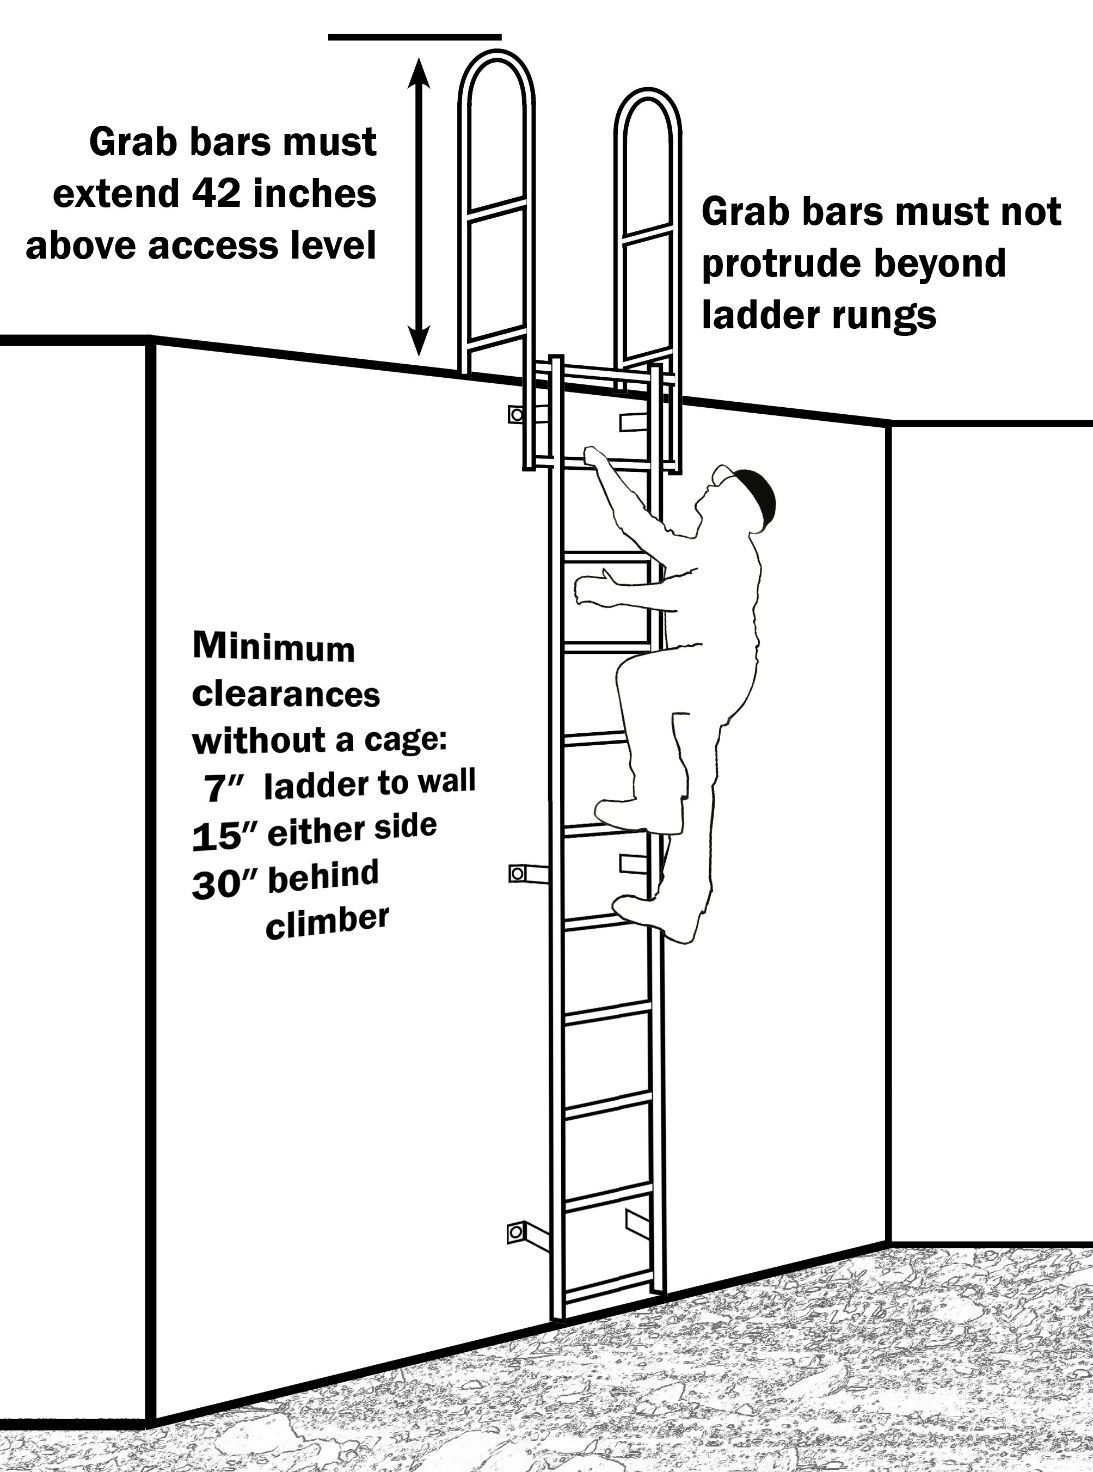 AE570/AE570 Fixed Ladder Safety Summarizing OSHA Requirements